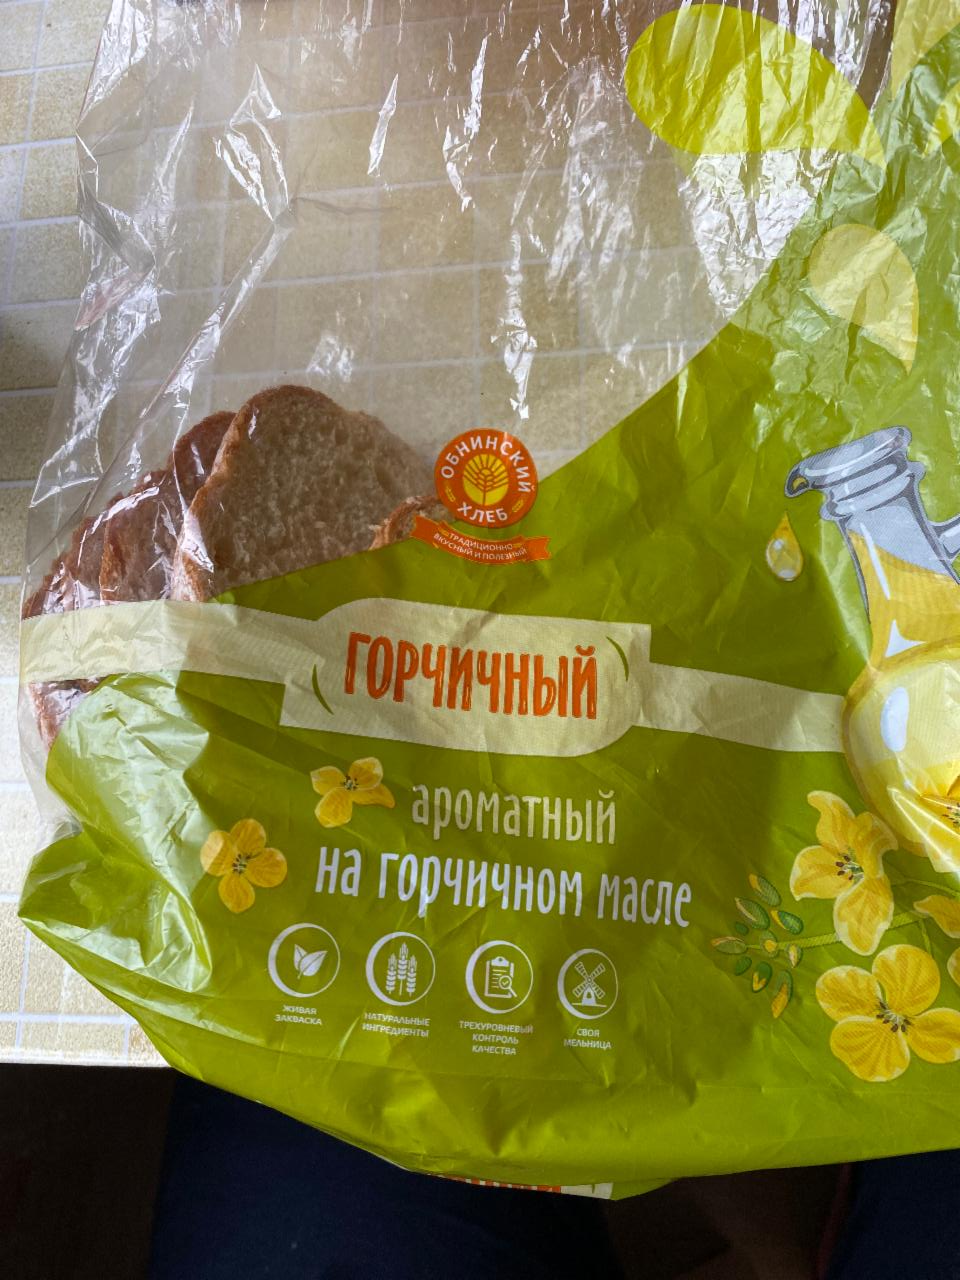 Фото - горчичный хлеб Обнинский хлеб